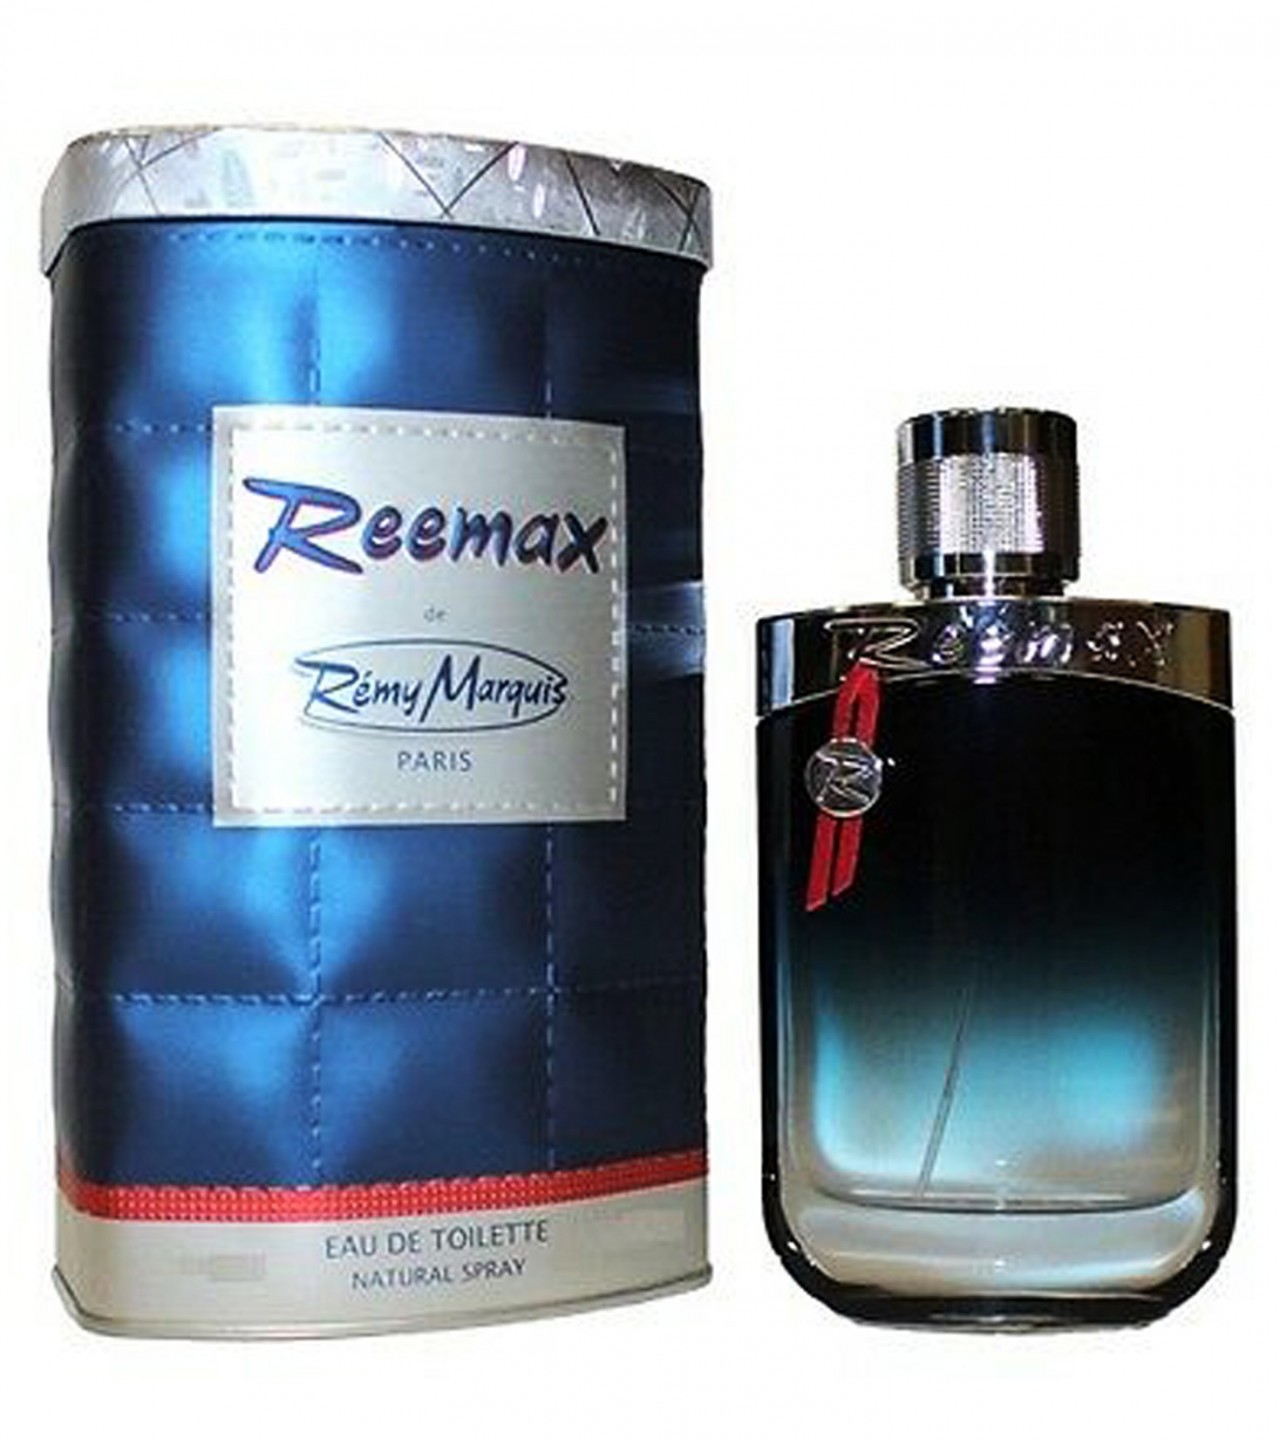 Remy Marquis Reemax Perfume for Men - Eau de Toilette - 60 ml